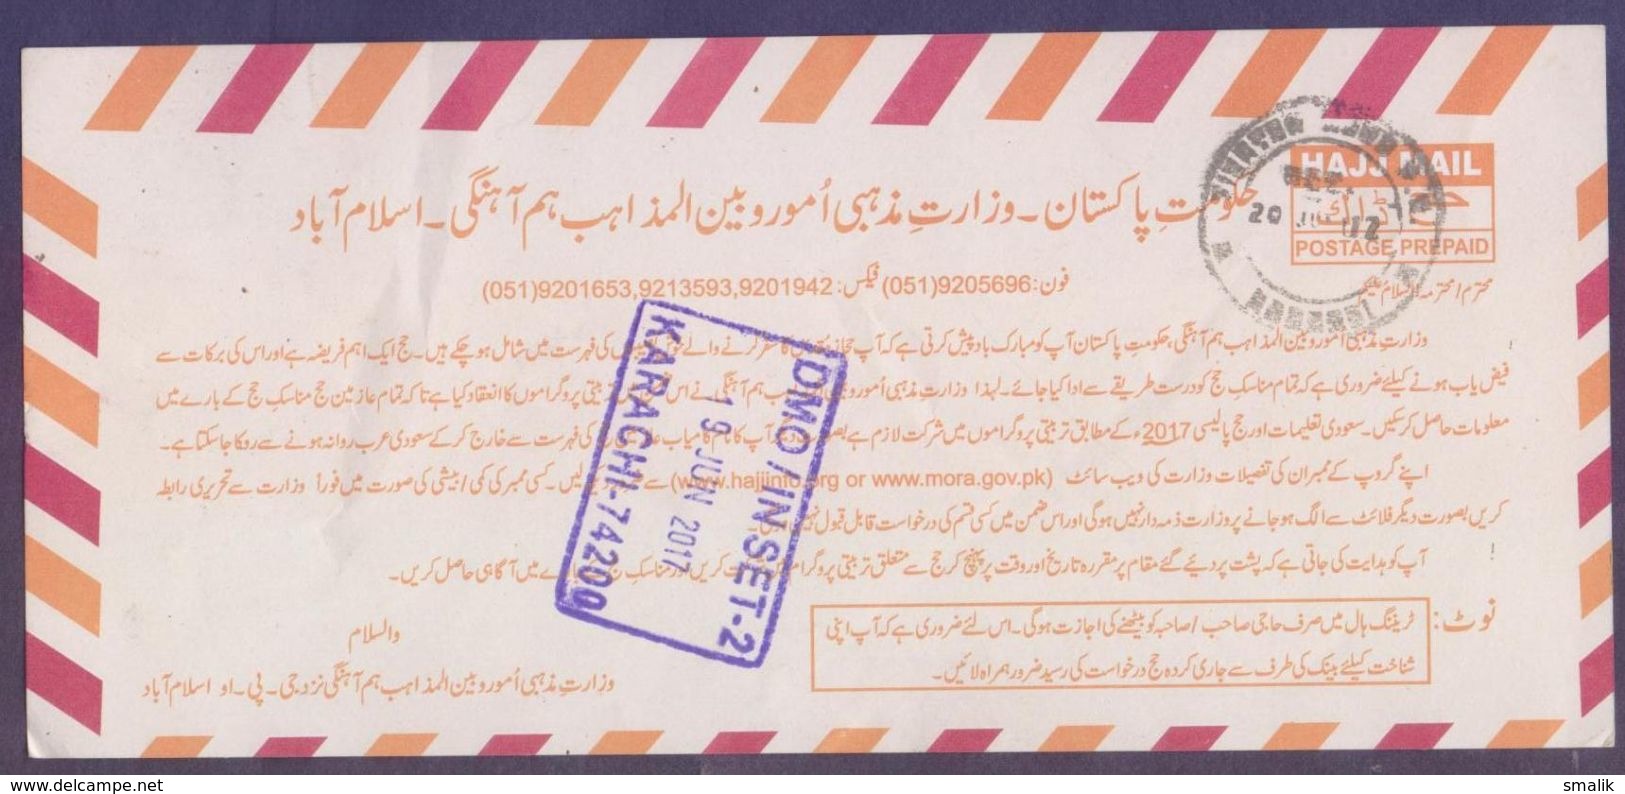 PAKISTAN HAJ MAIL POSTCARD 2017 Postage Prepaid, Used - Pakistan